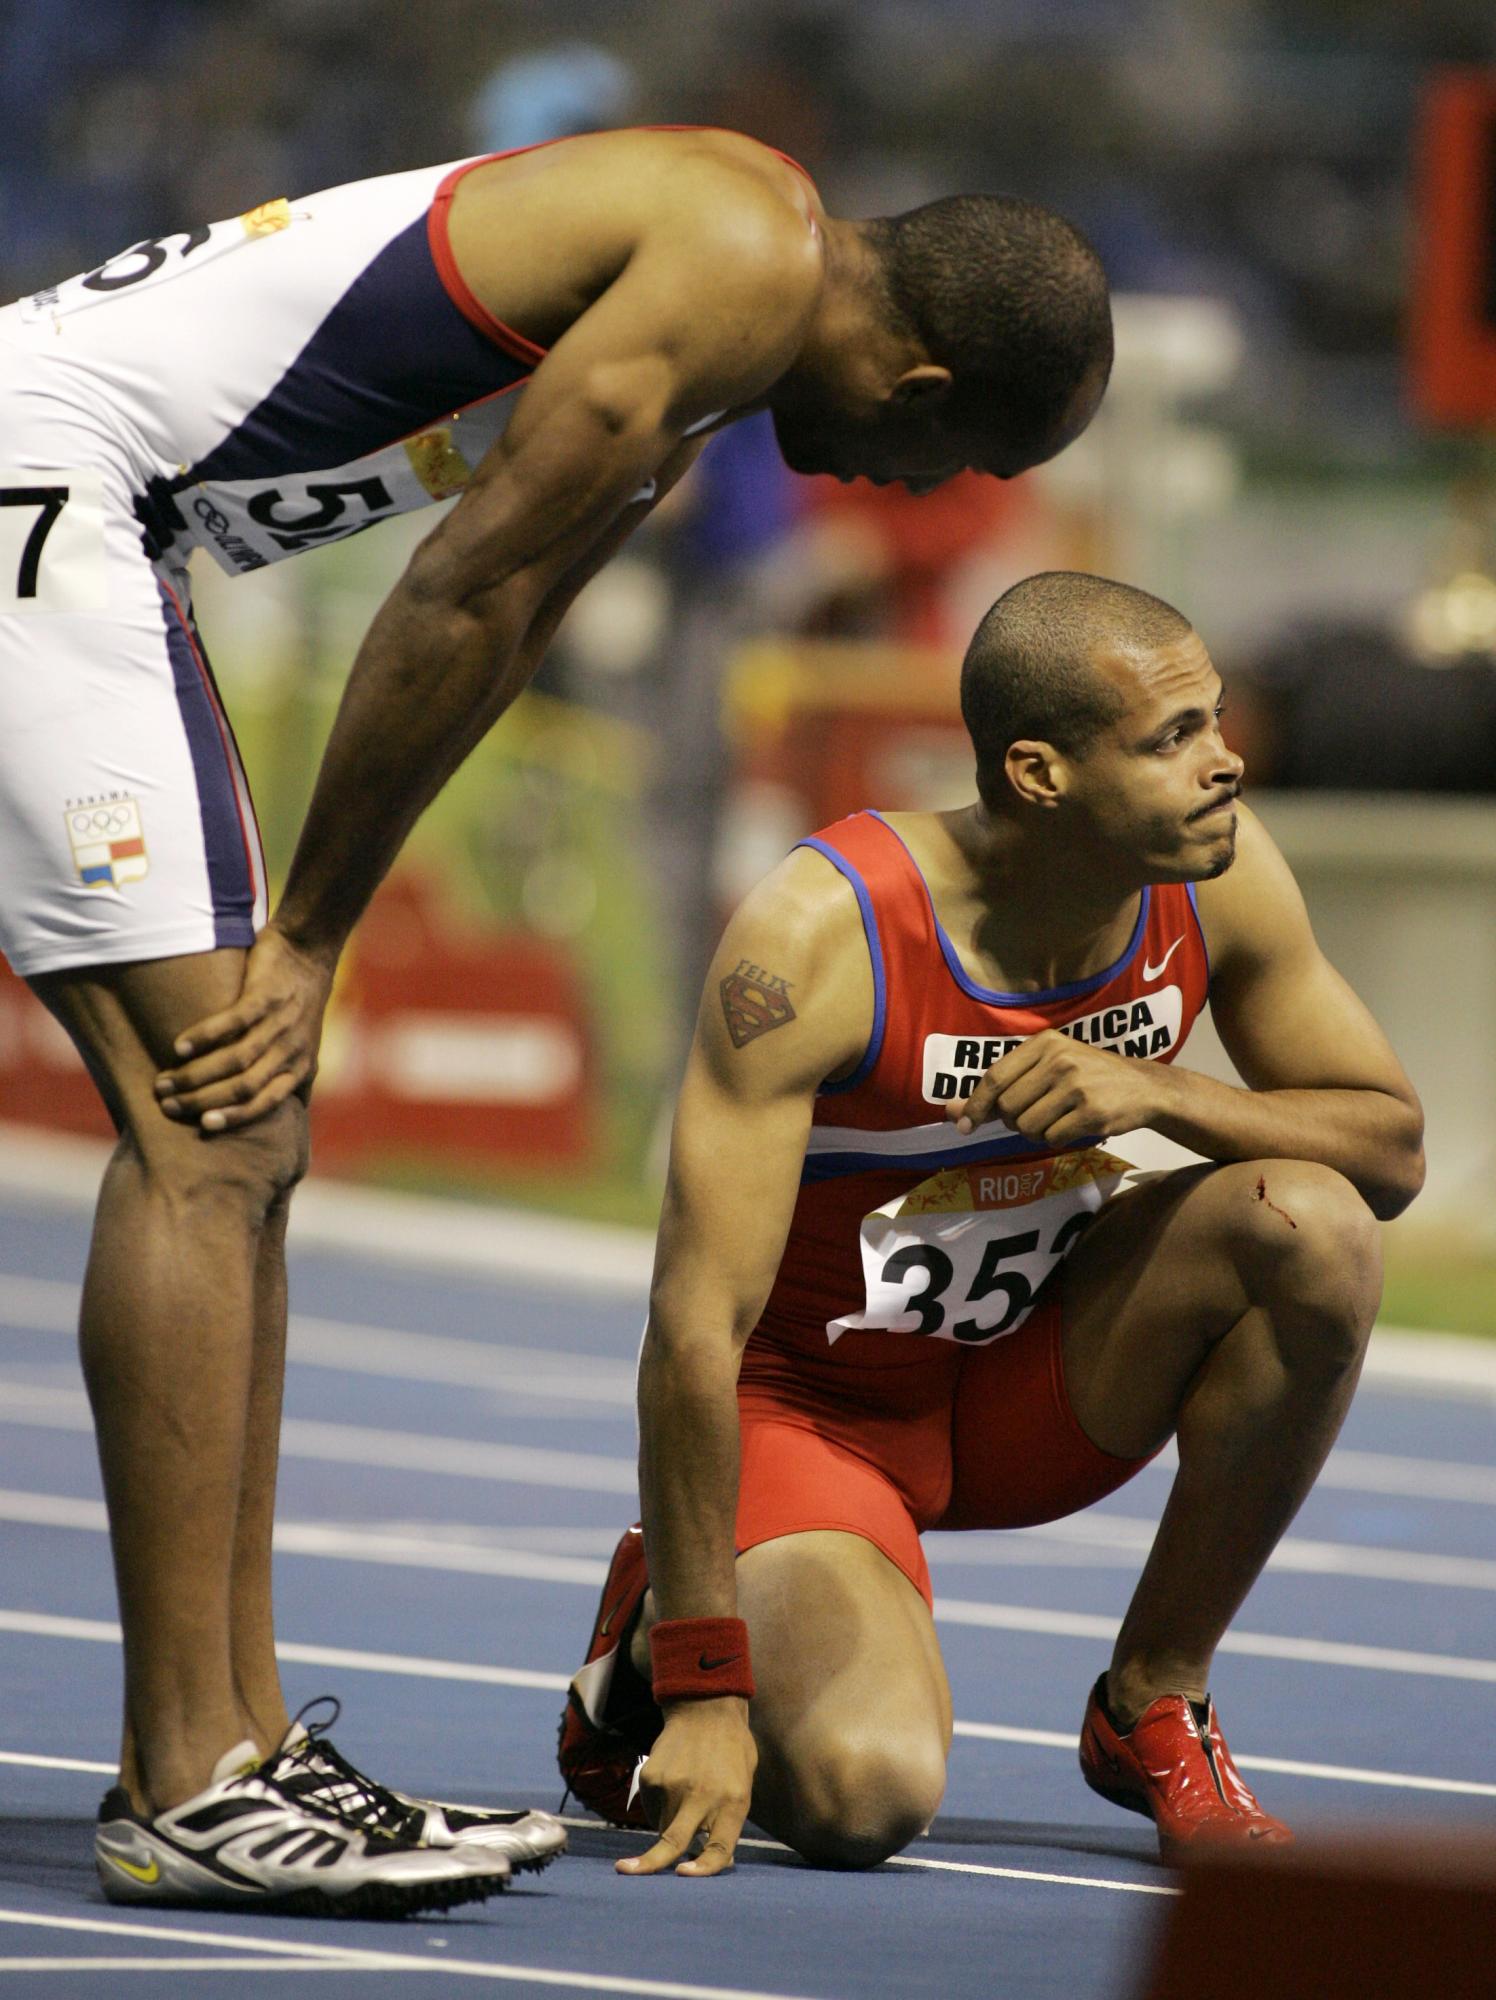 No siempre fue alegría. En los Juegos Panamericanos de Río 2007 el campeón se conformó con la medalla de bronce.